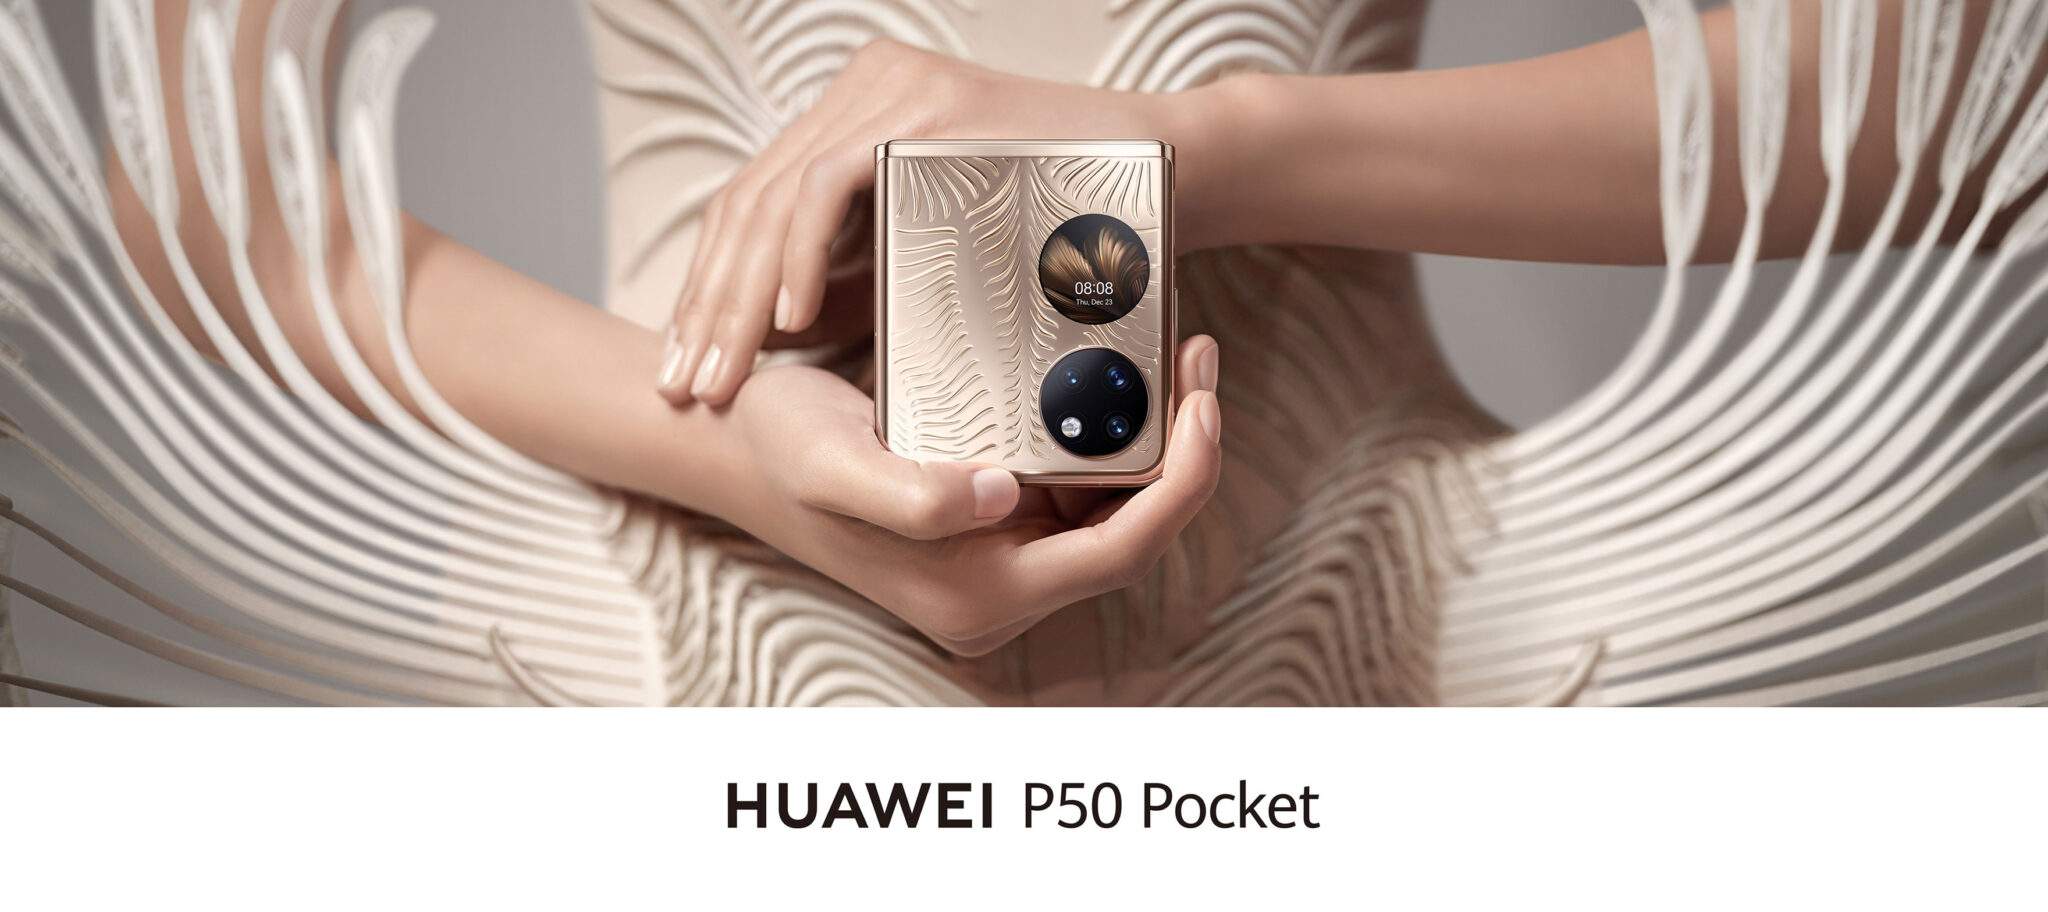 HUAWEI P50 Pocket ราคา - HUAWEI P50 Pocket scaled - ภาพที่ 1